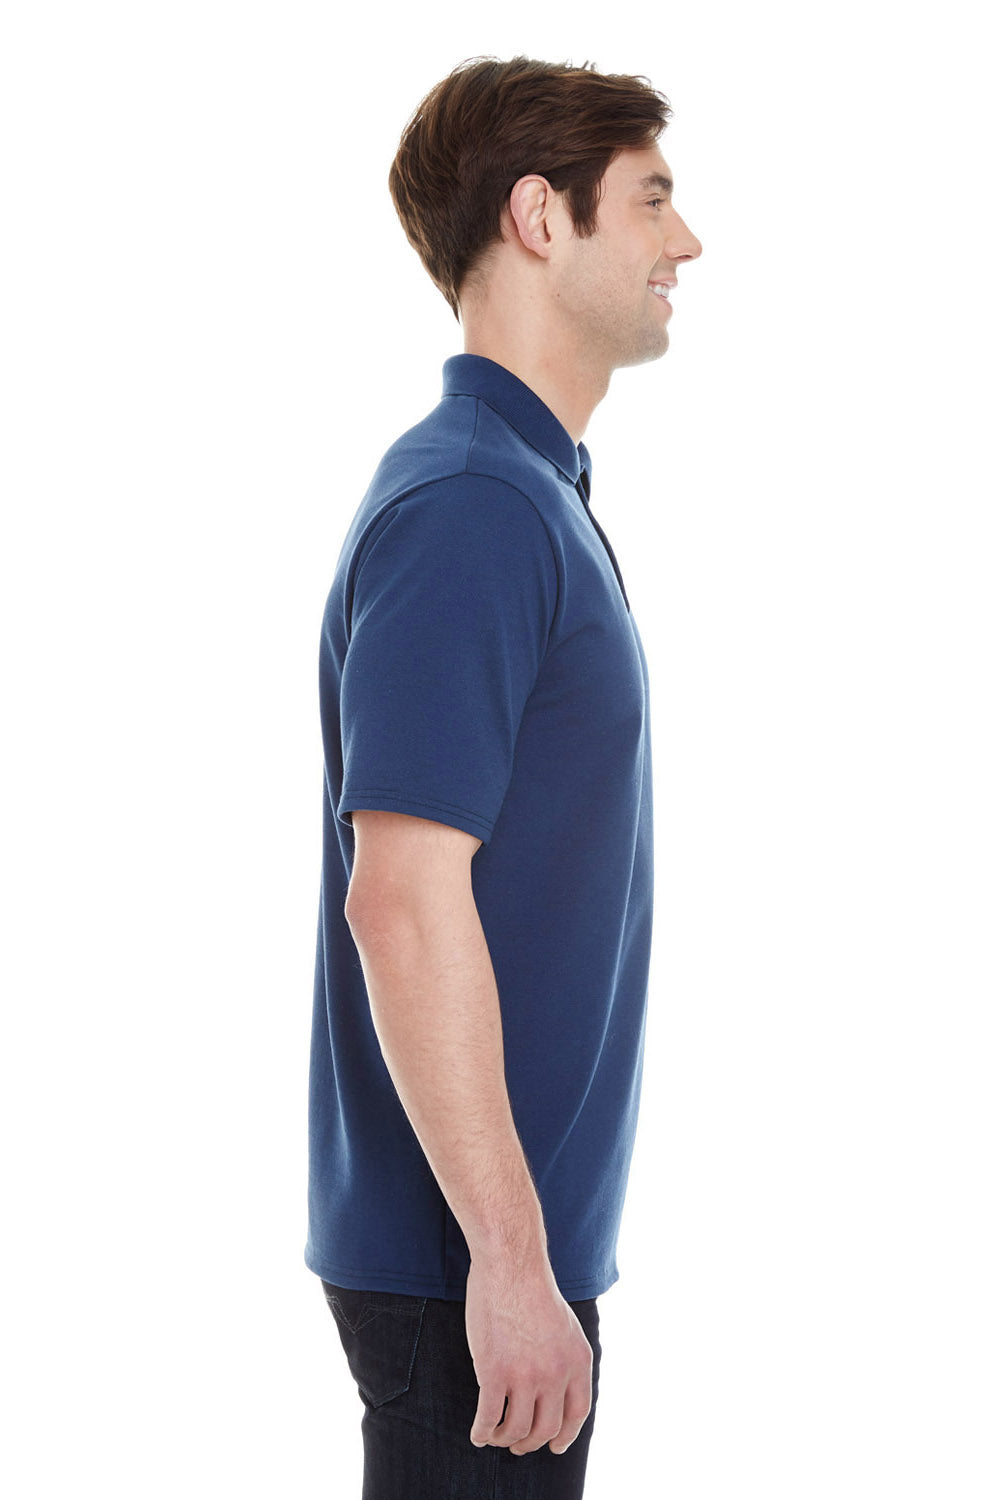 Hanes Women's X-Temp w/ Fresh IQ Short Sleeve Pique Polo Shirt